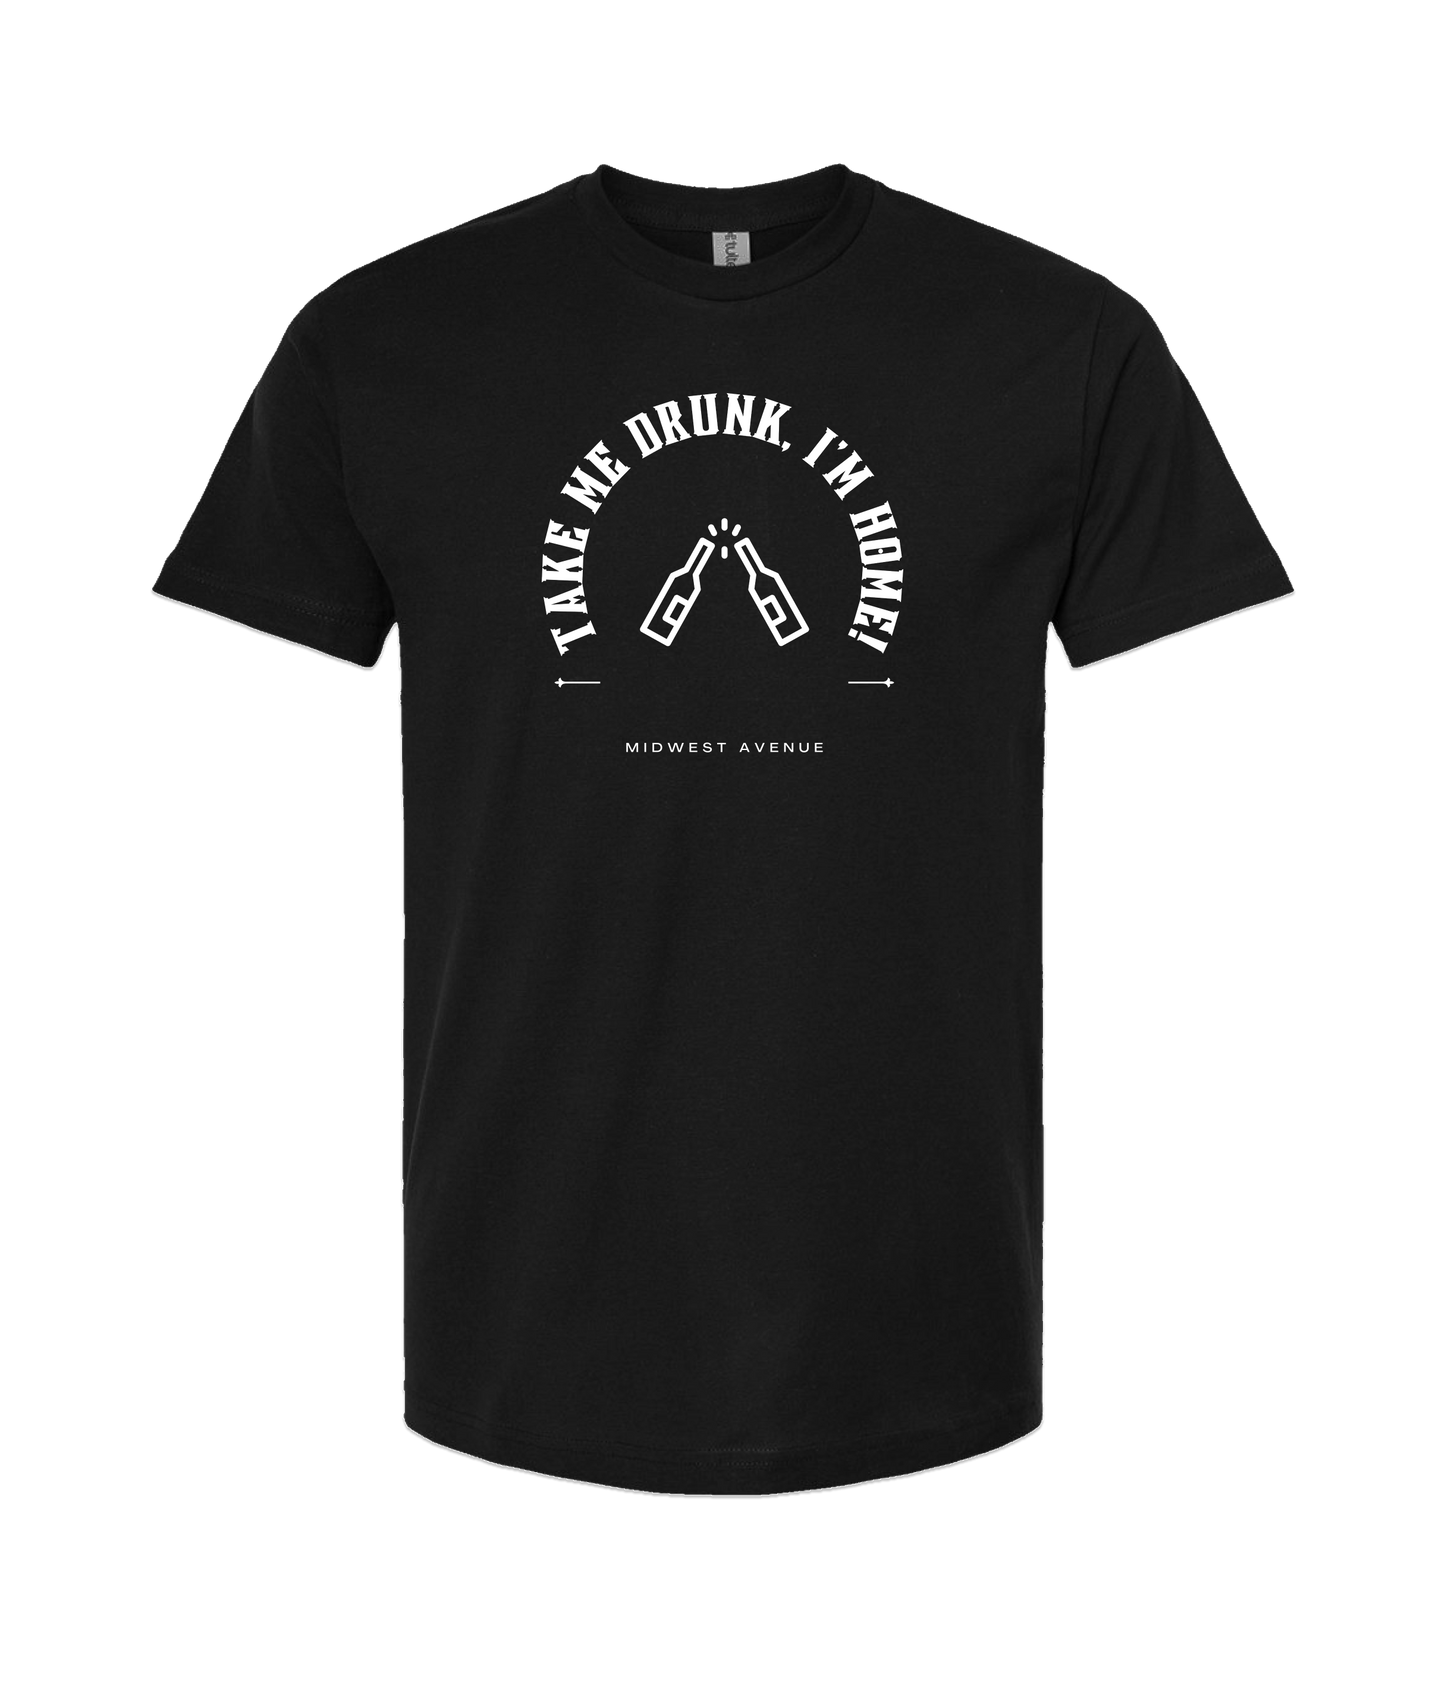 Midwest Avenue - Drunk - Black T Shirt